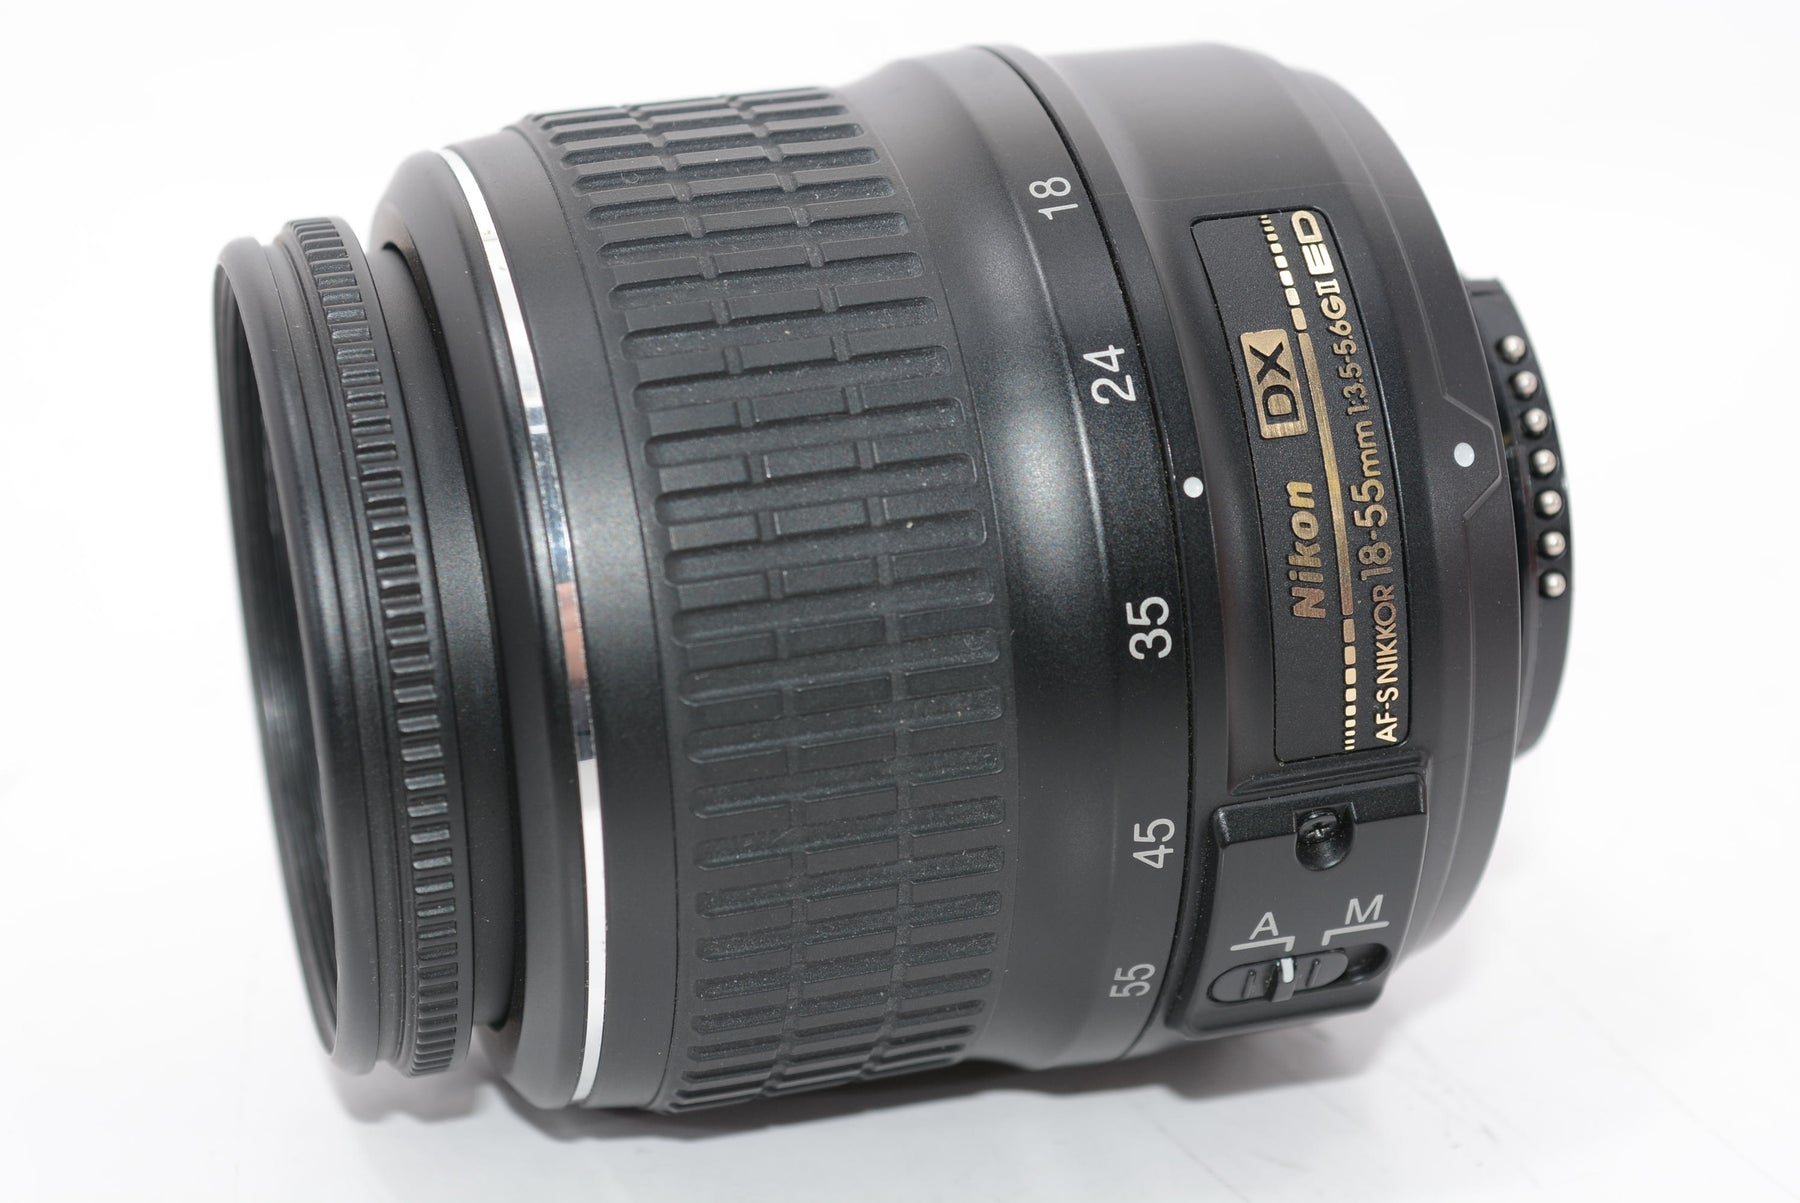 【外観特上級】Nikon 標準ズームレンズ AF-S DX Zoom Nikkor ED 18-55mm f/3.5-5.6 G II  ブラック ニコンDXフォーマット専用